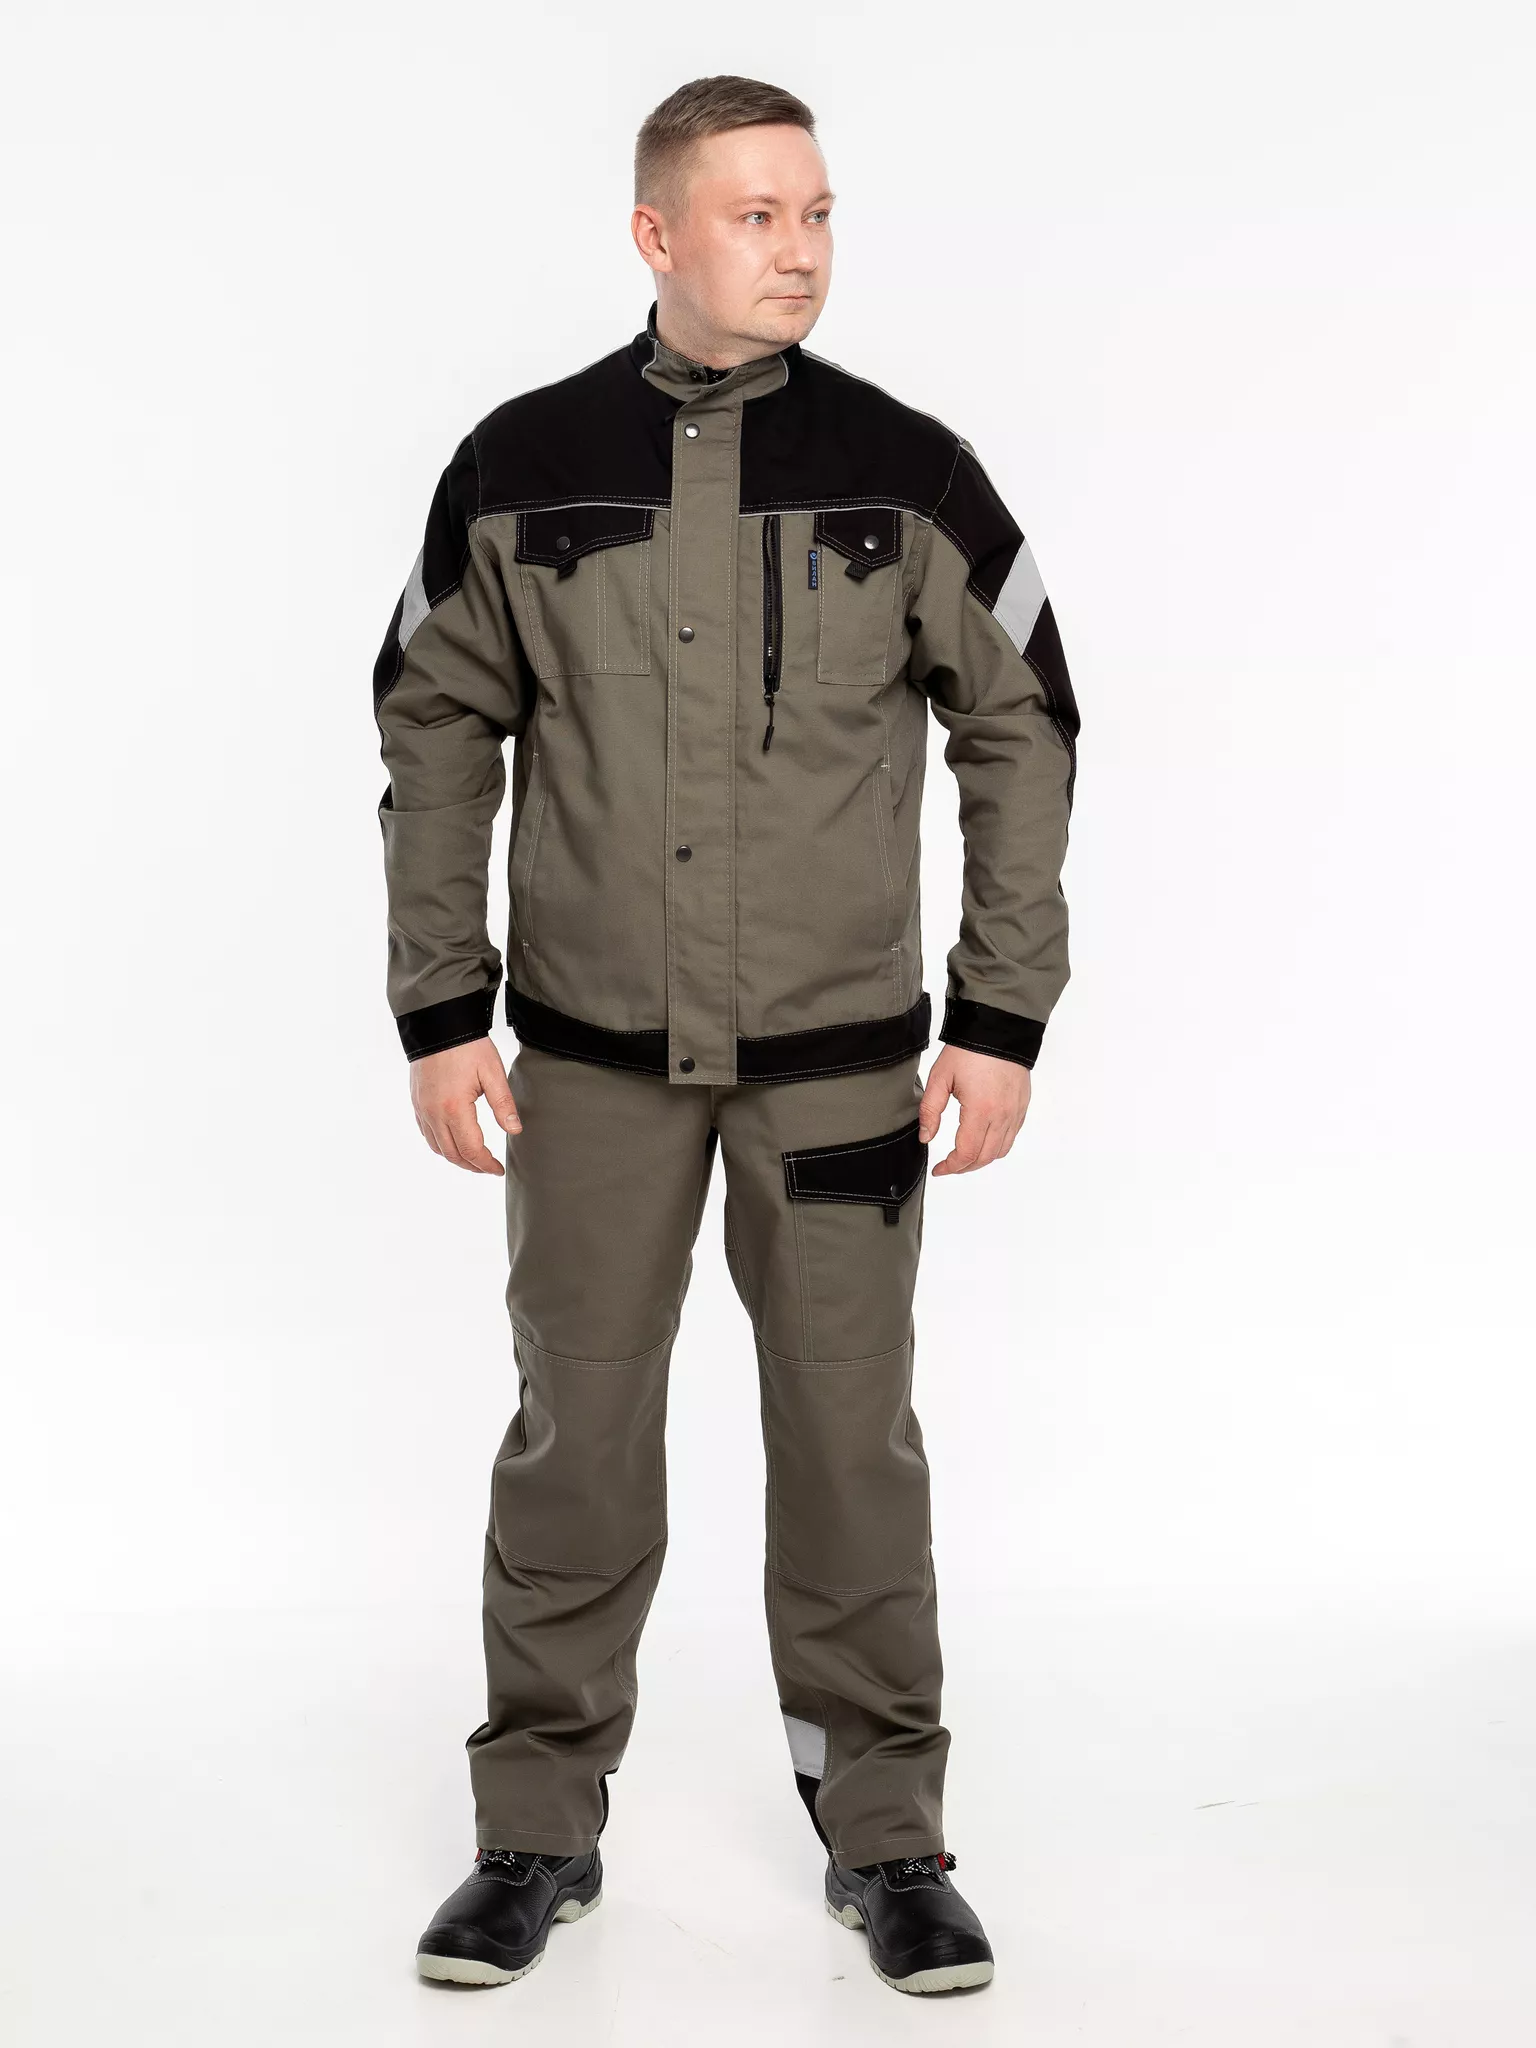 Куртка рабочая КР.366 р.44-46, рост 170-176 (цвет оливковый, отделка черная.СОП)